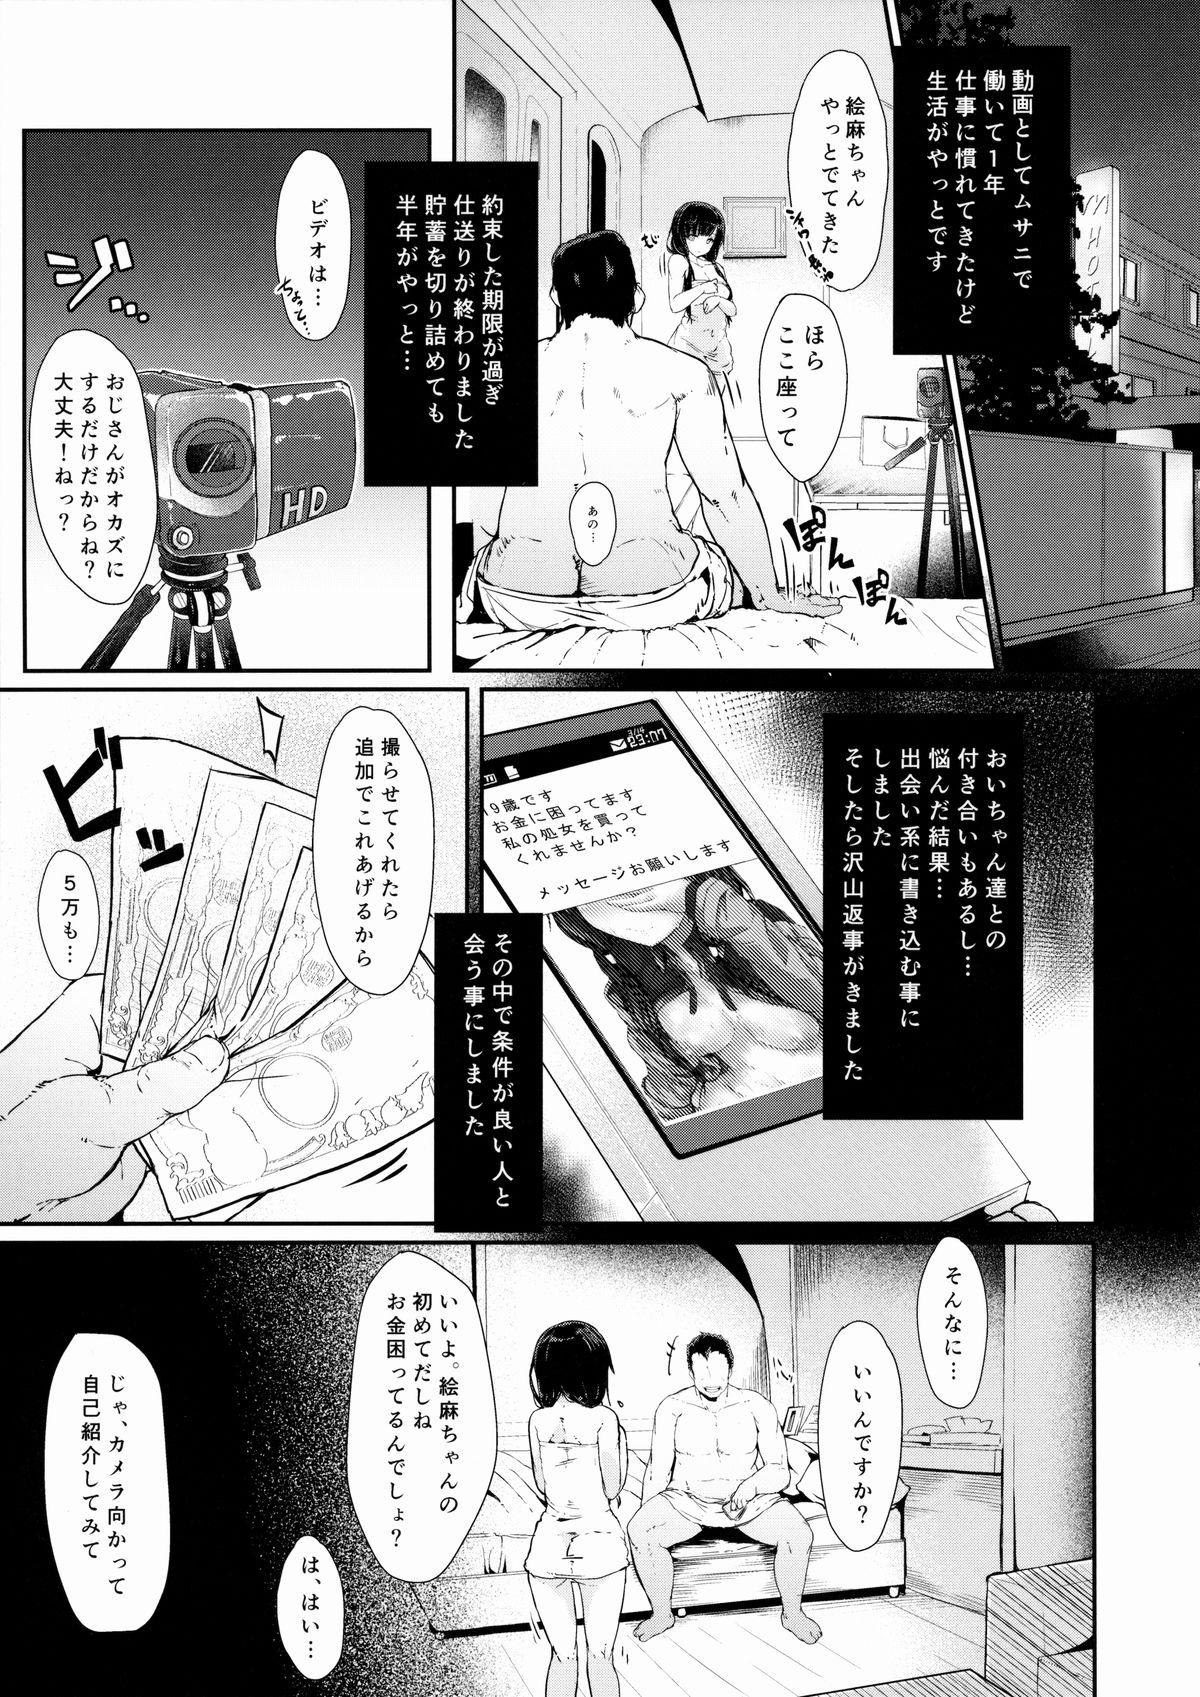 Cachonda Shiokuri Owacchai mashita... - Shirobako Blowjob - Page 5